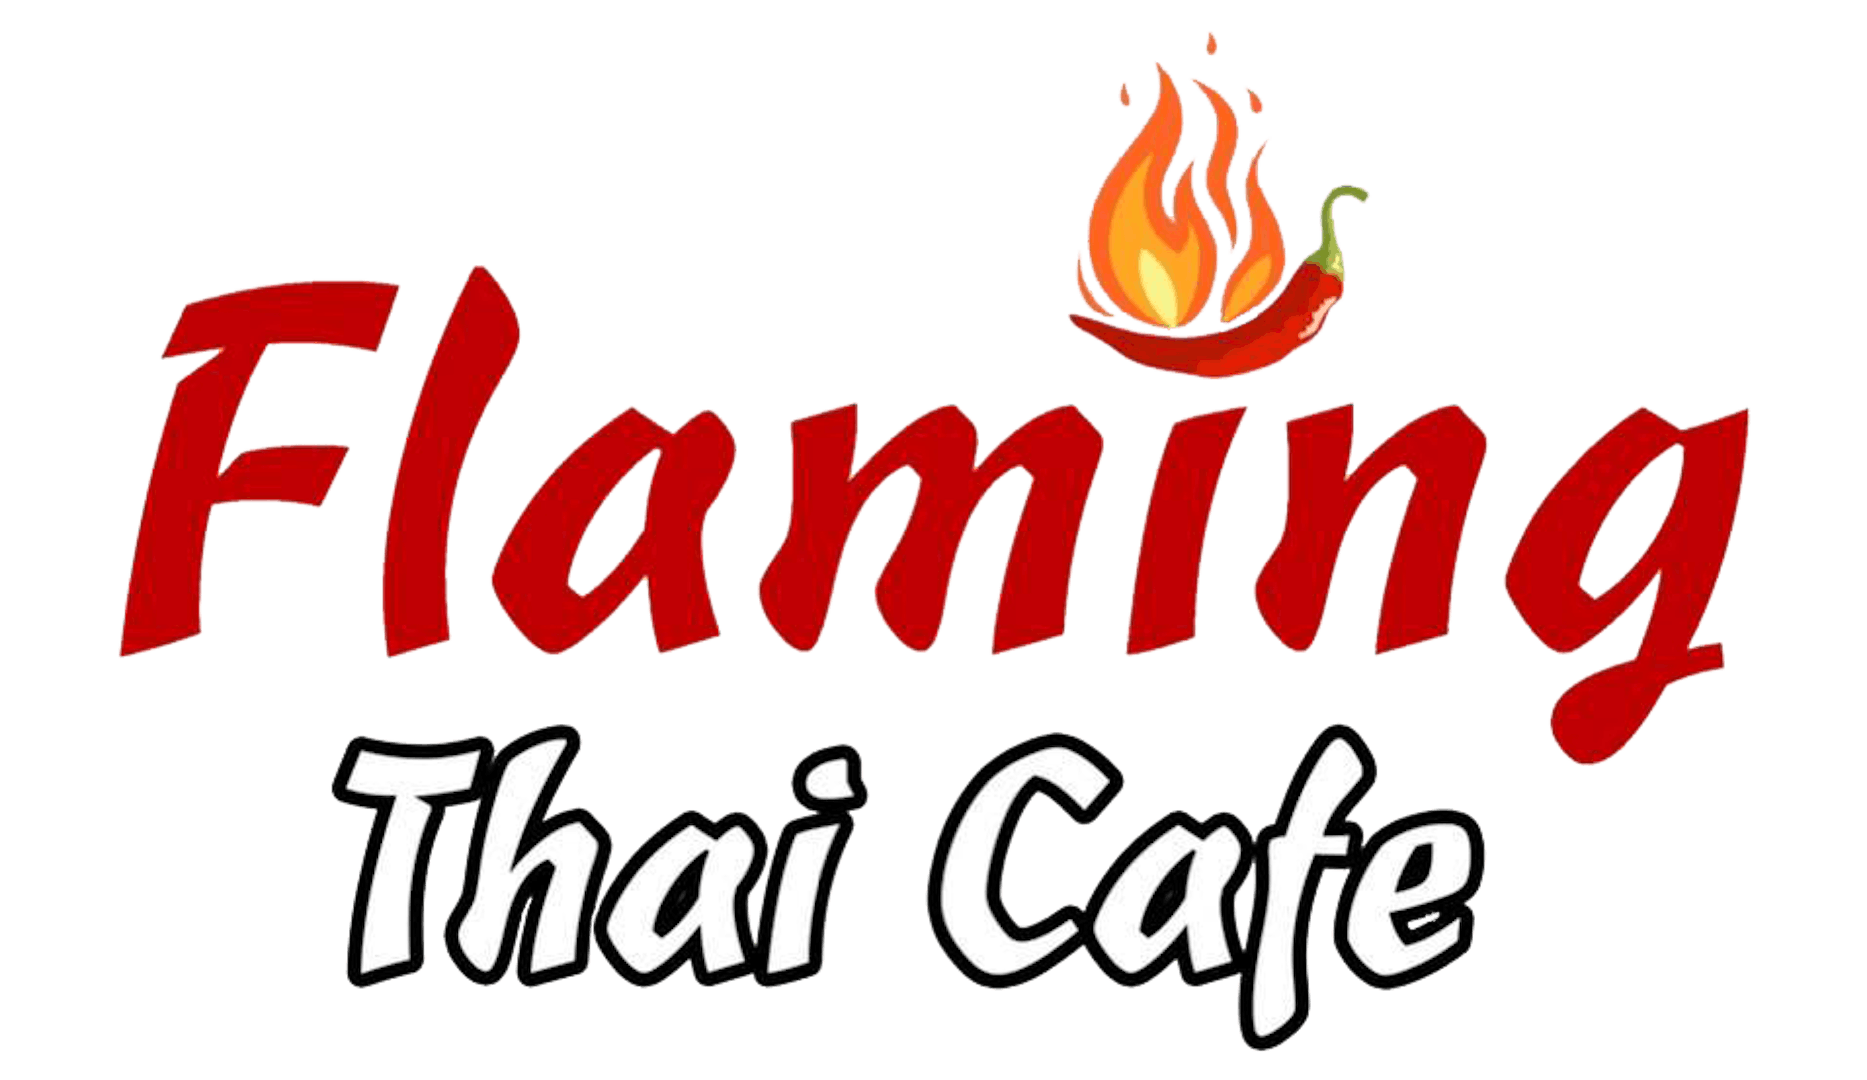 Flaming Thai Cafe